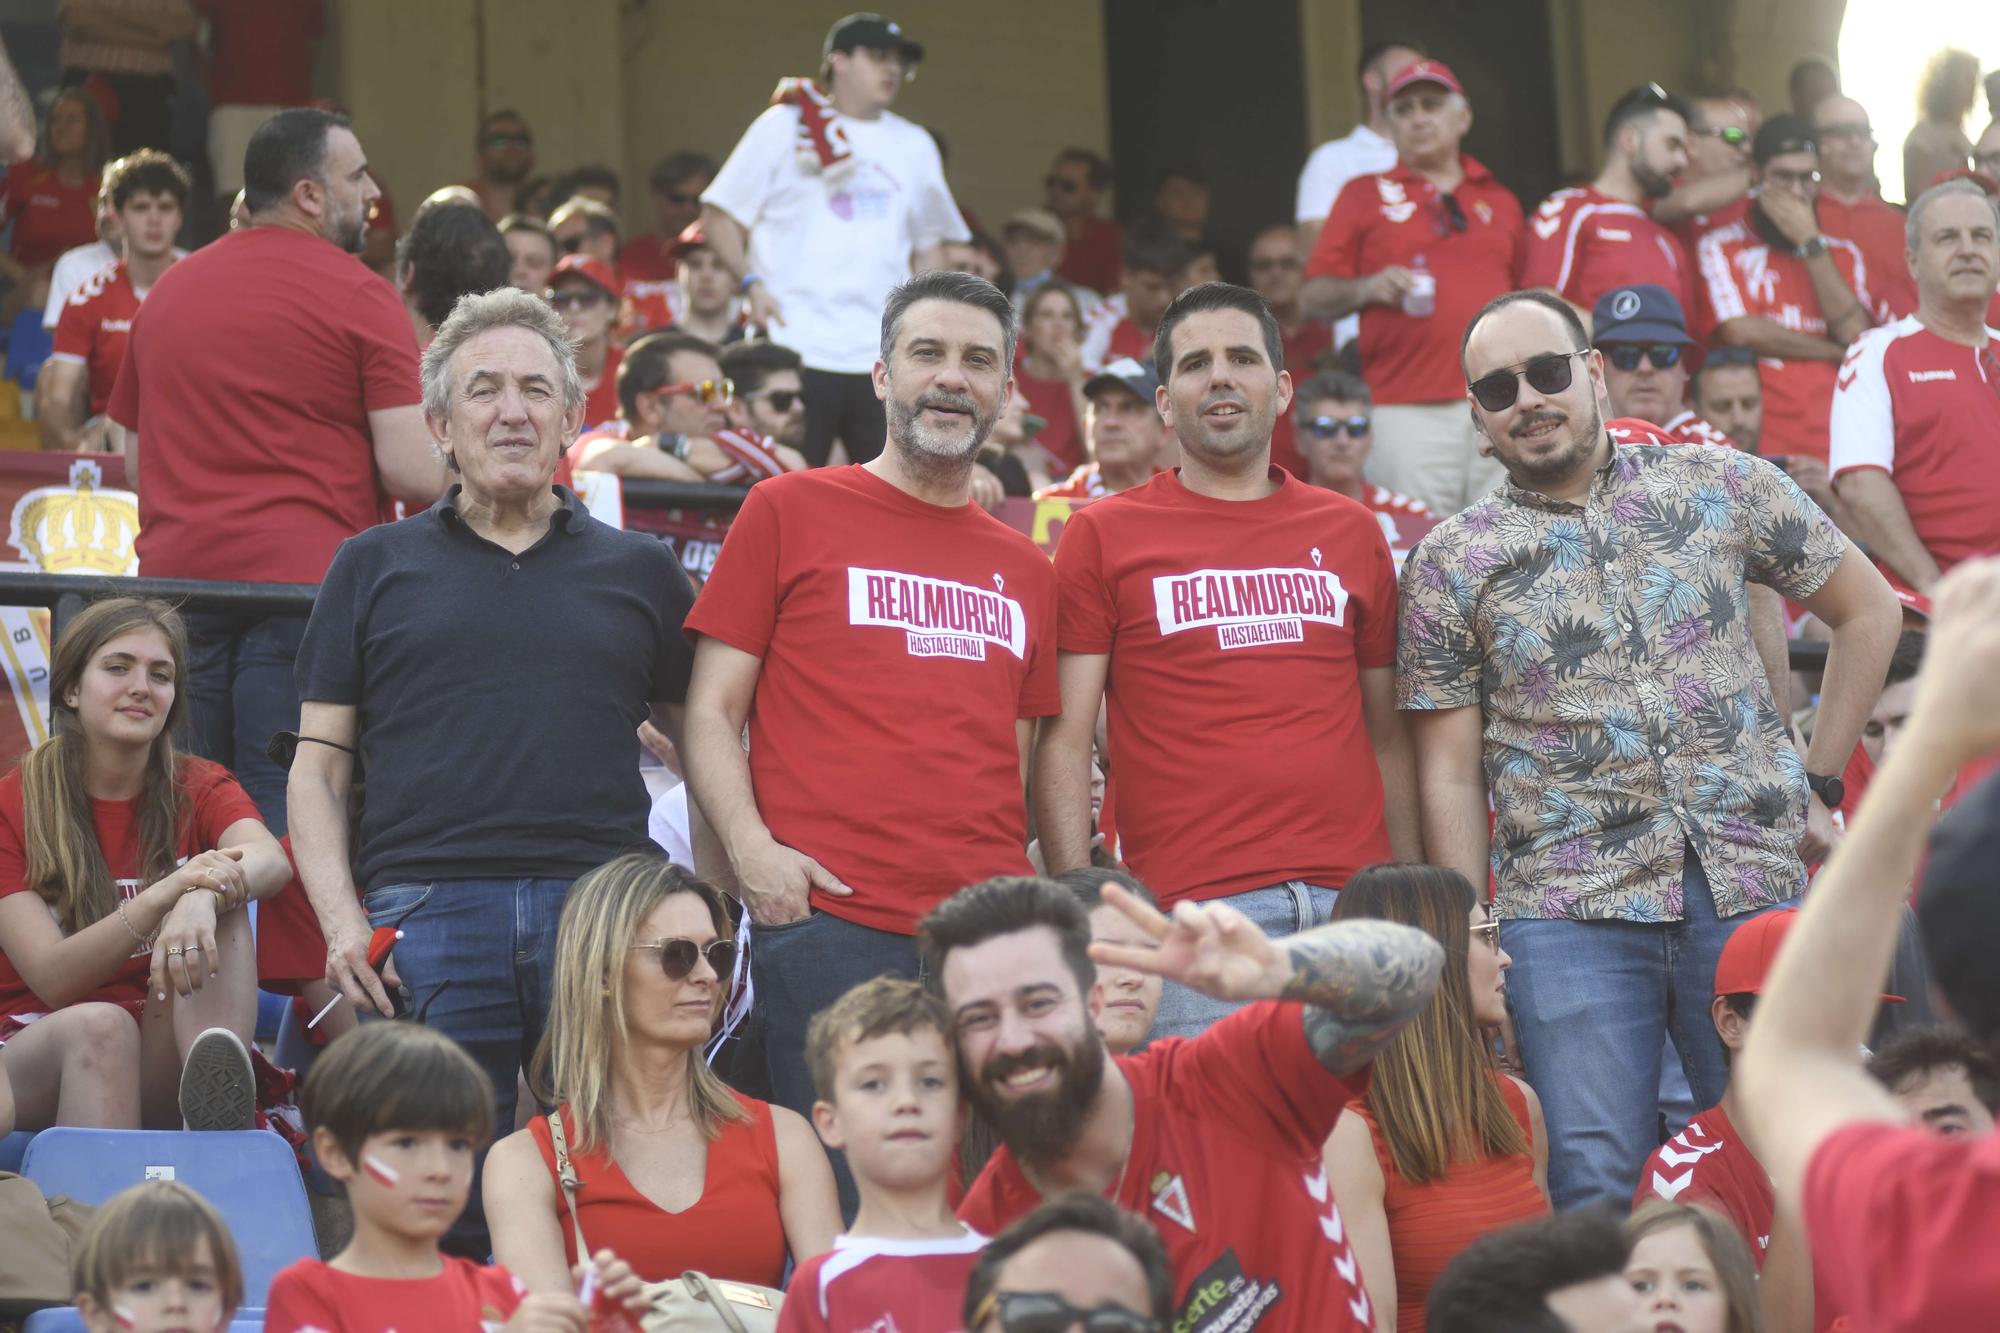 El Real Murcia consigue el ansiado ascenso a Primera Federación